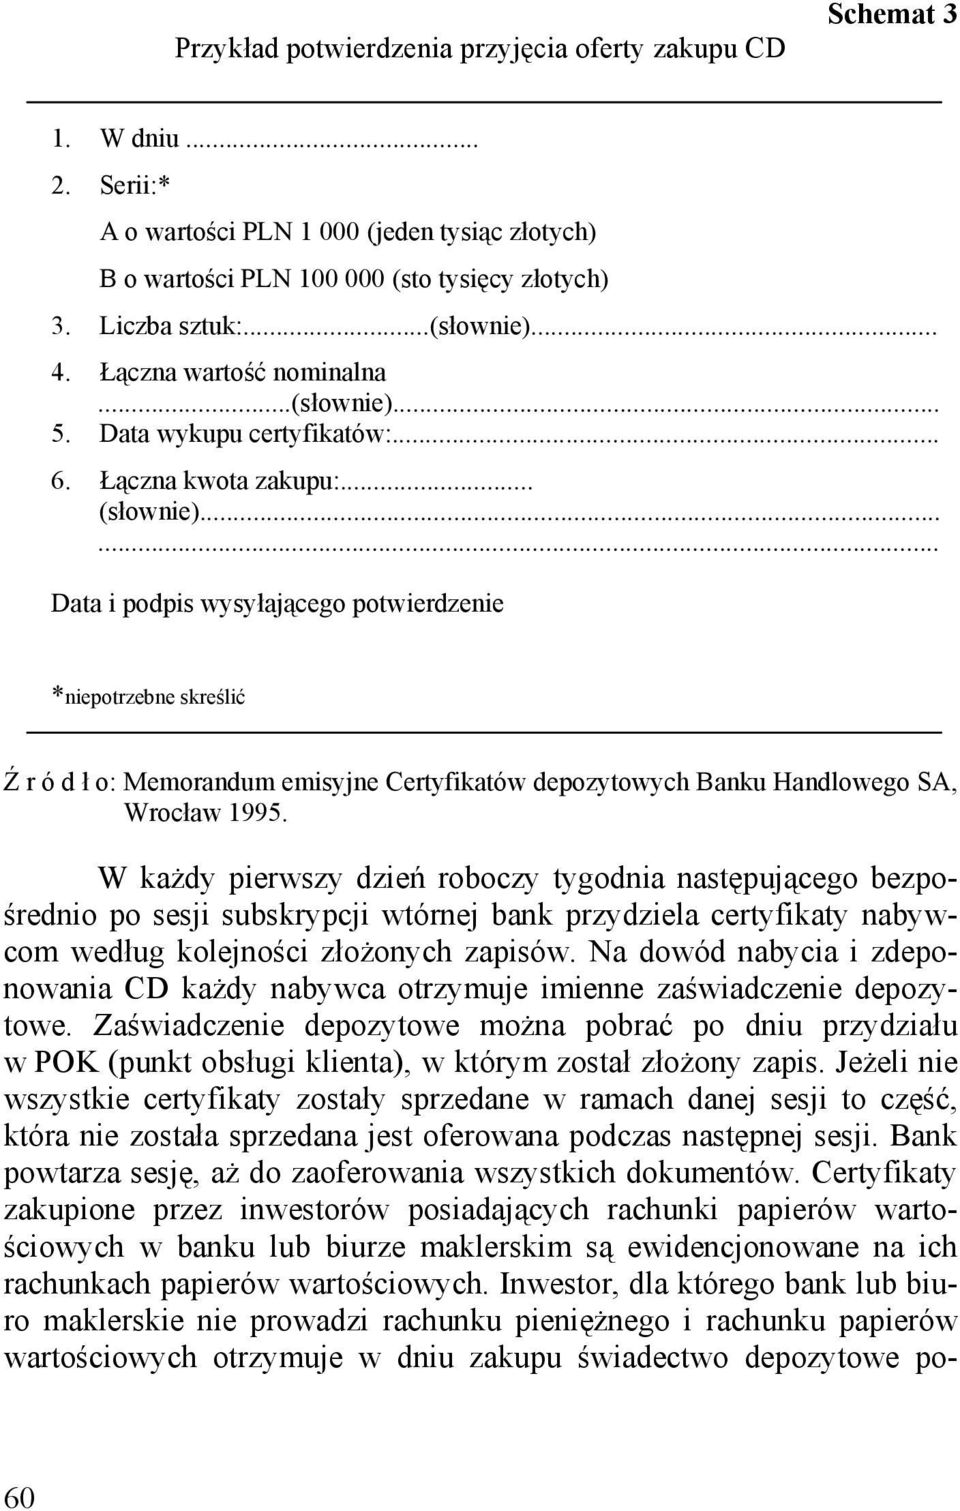 ..... Data i podpis wysyłającego potwierdzenie *niepotrzebne skreślić Ź r ó d ł o: Memorandum emisyjne Certyfikatów depozytowych Banku Handlowego SA, Wrocław 1995.